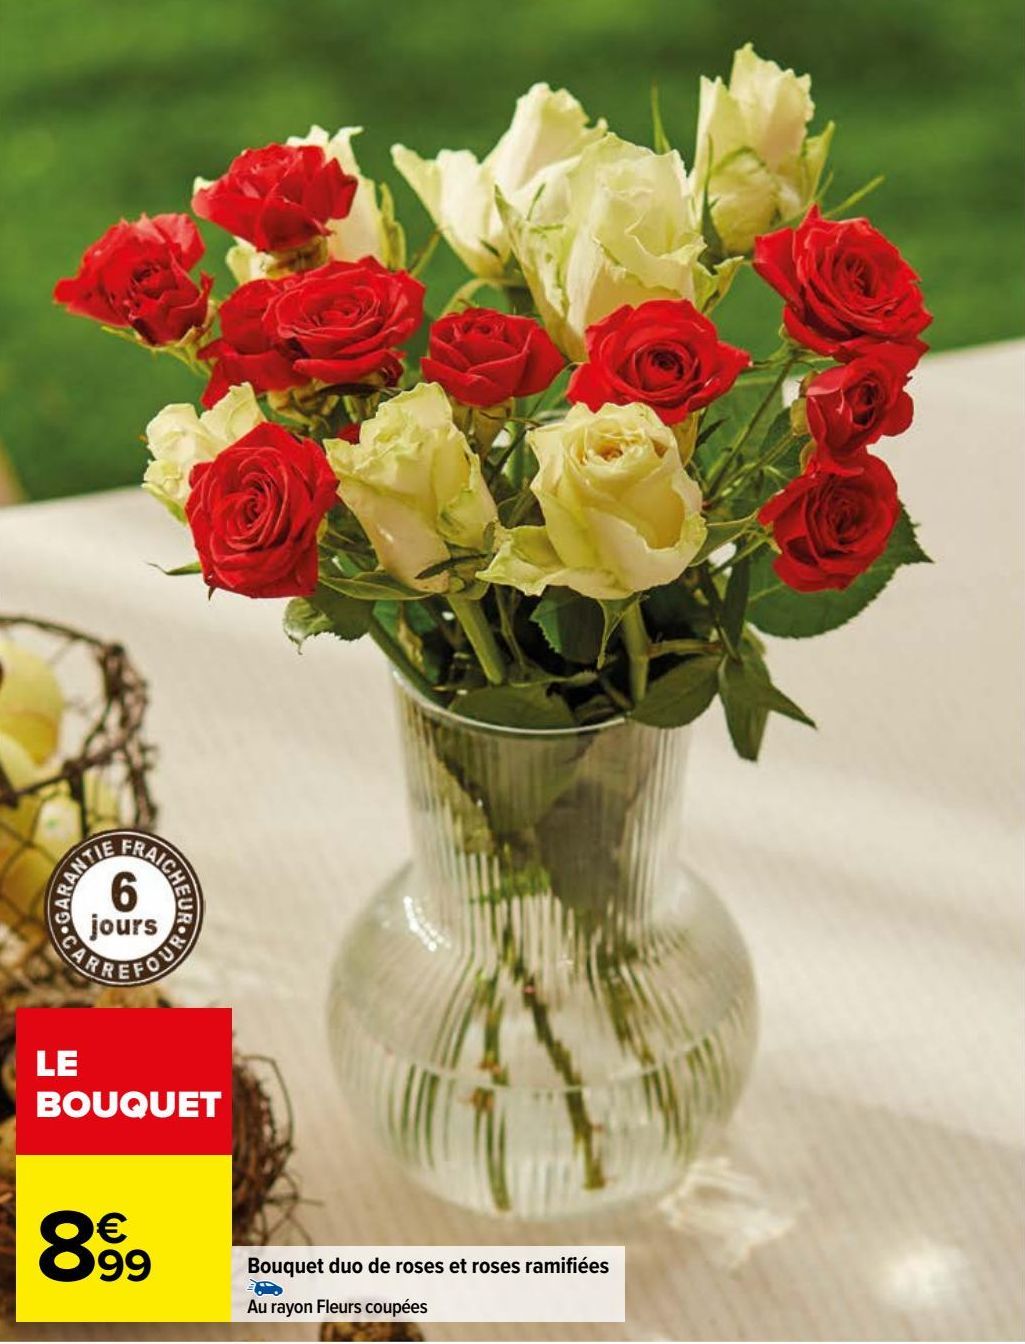 bouquet duo de roses et roses ramifiées